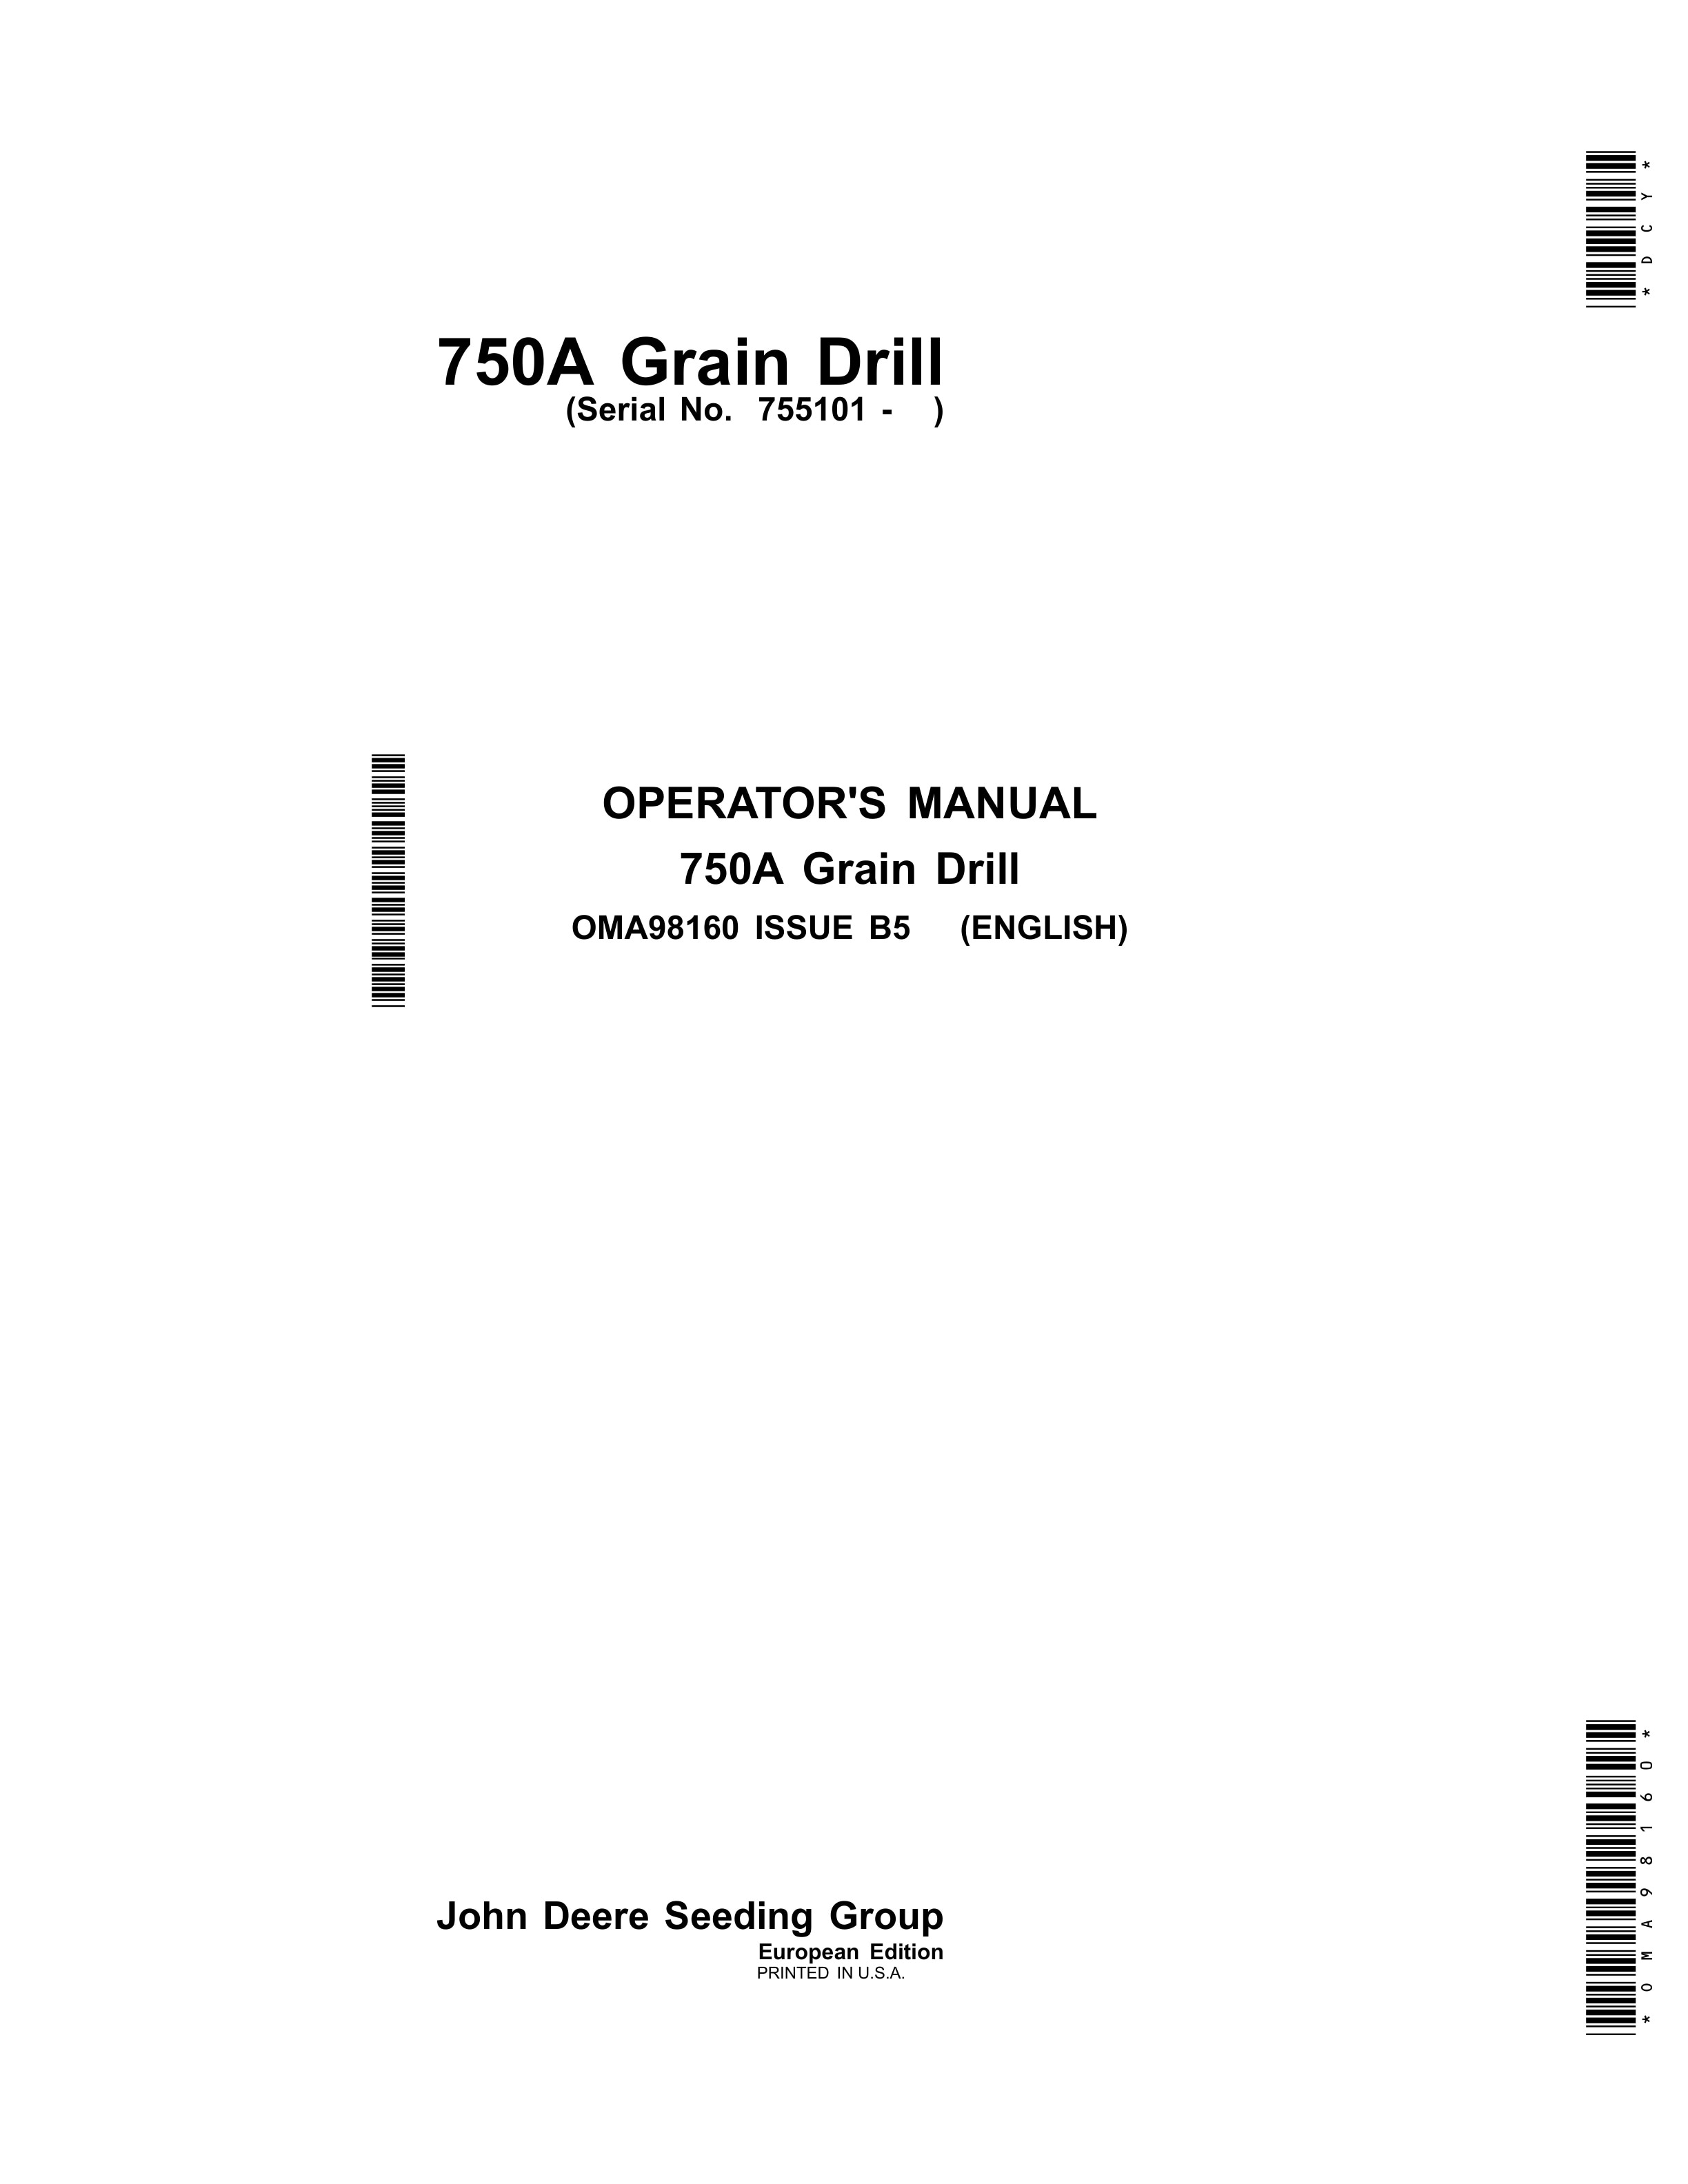 John Deere 750A Grain Drill Operator Manual OMA98160 1